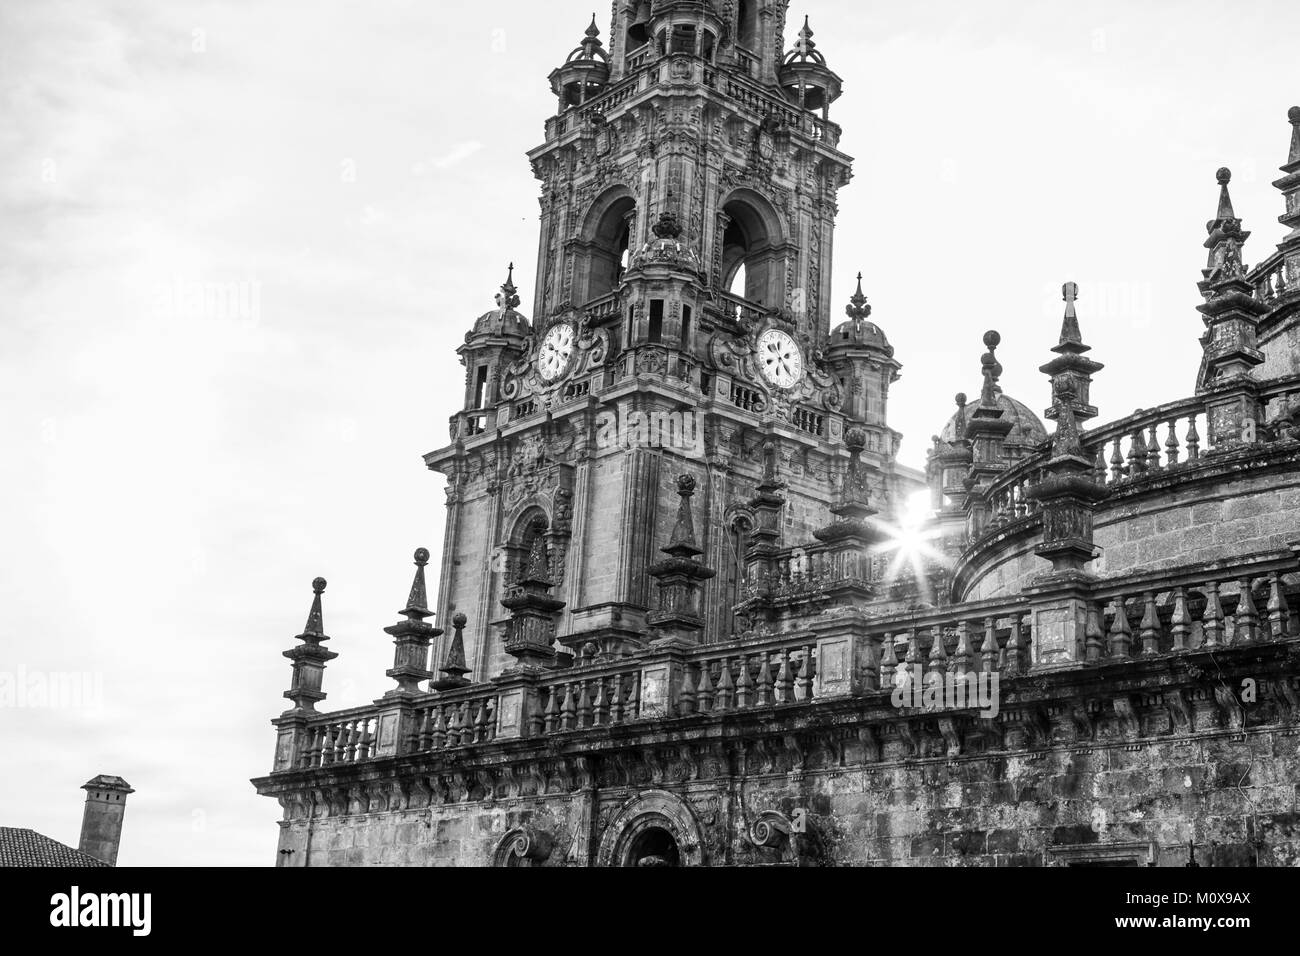 Obradorio, cathédrale, de style baroque, noir et blanc,momunent emblématique de Saint Jacques de Compostelle, Galice, Espagne. Banque D'Images